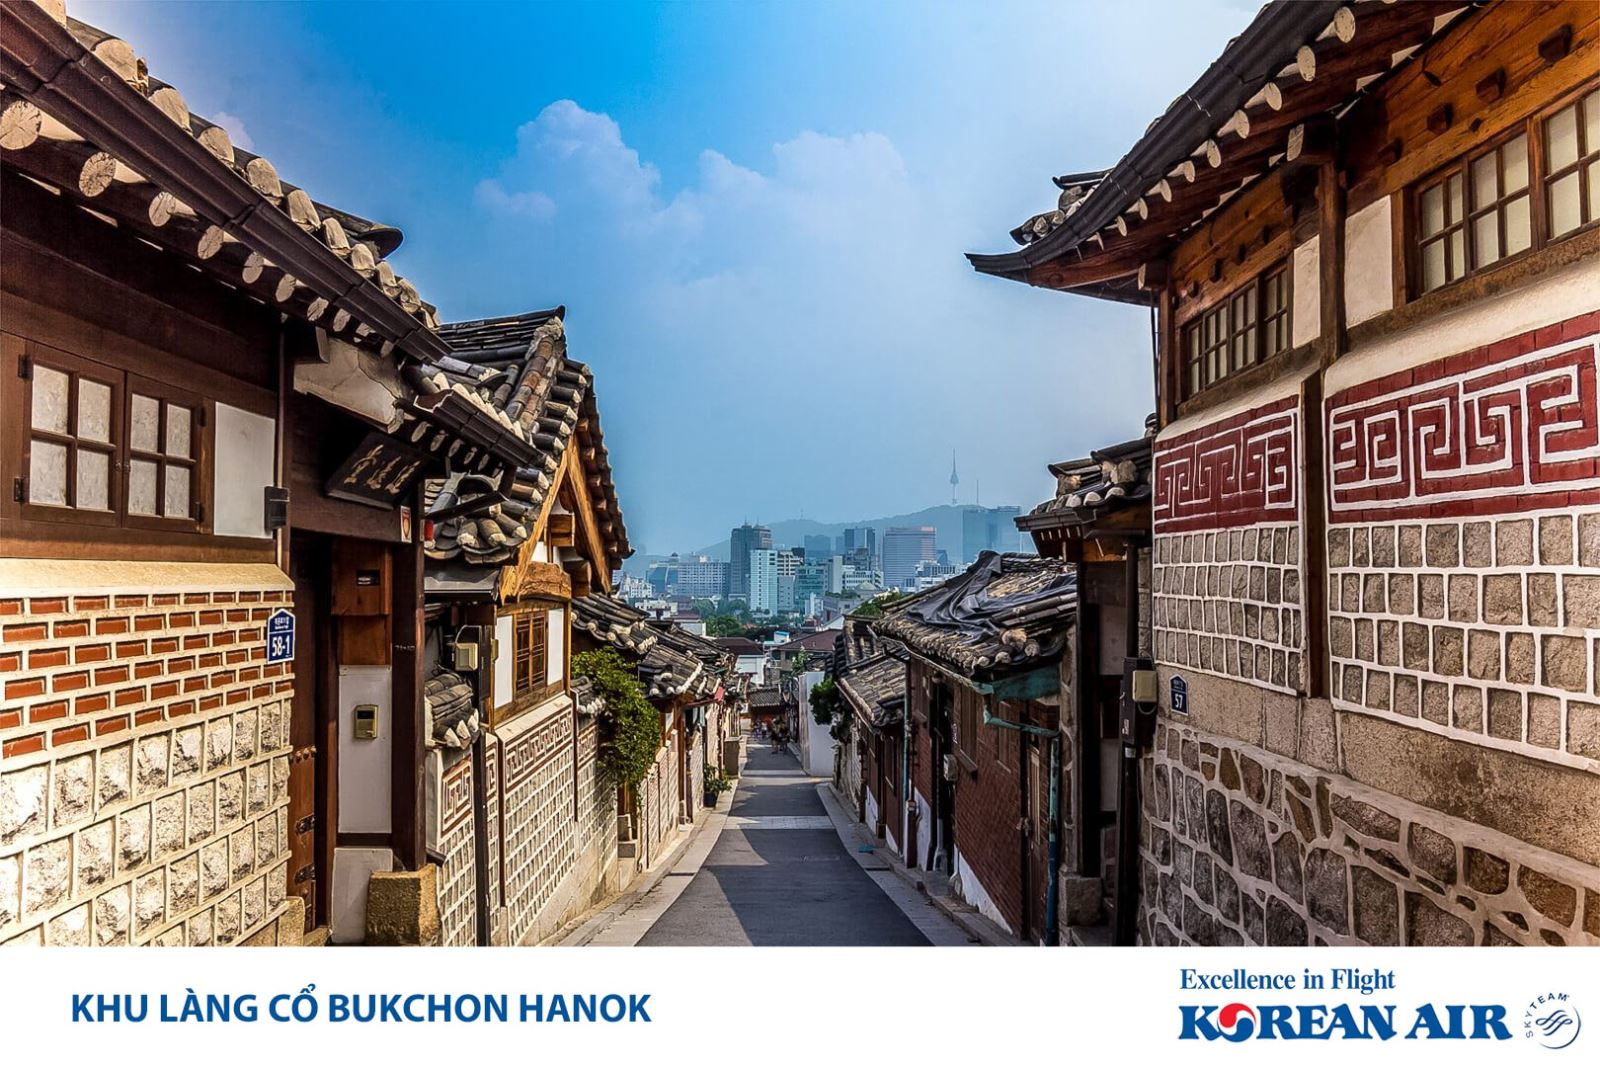 Khu làng cổ Hàn Quốc là địa điểm không thể bỏ qua